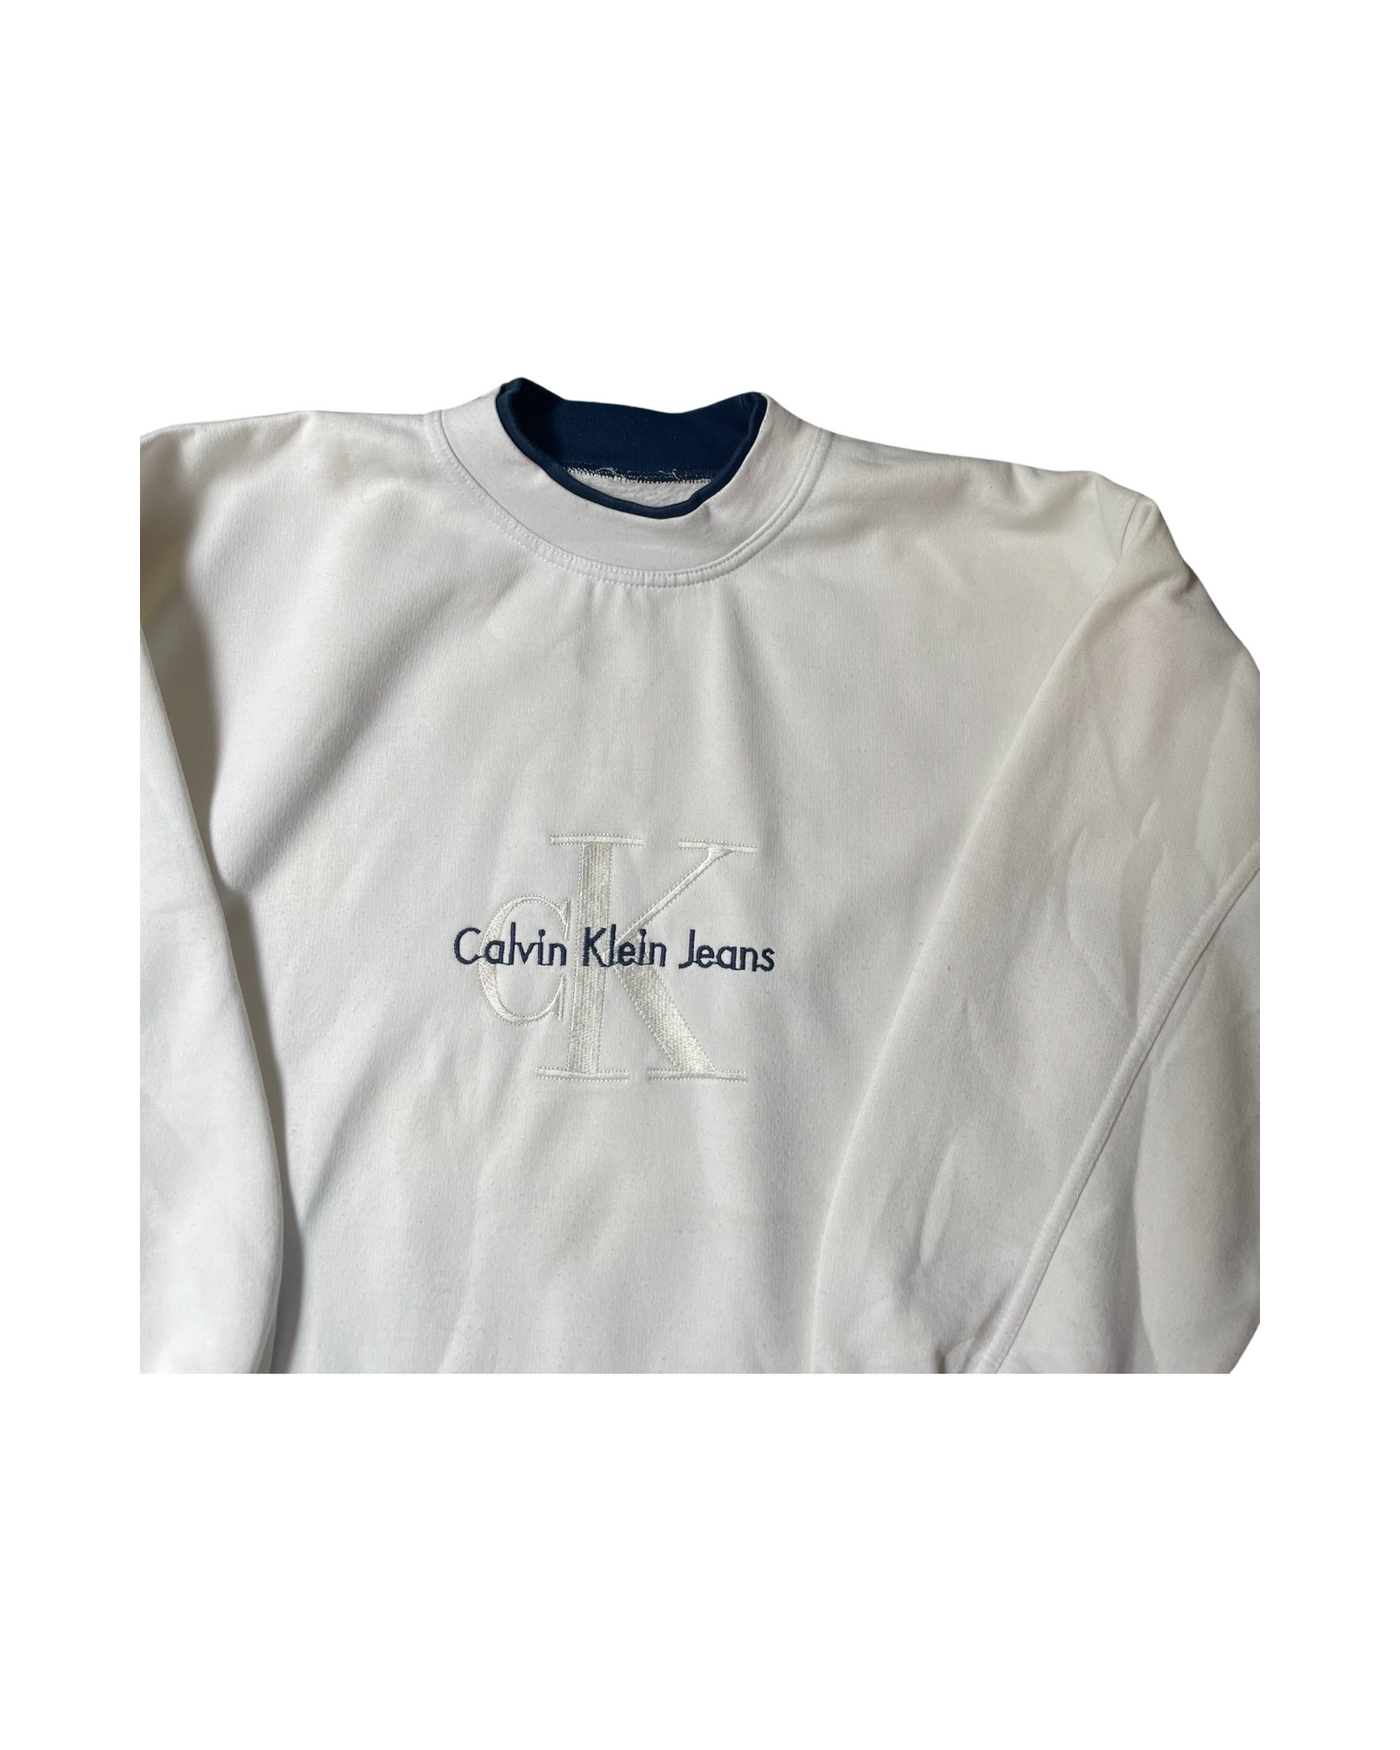 Vintage 90’s Calvin Klein Crew Neck Jumper Size L